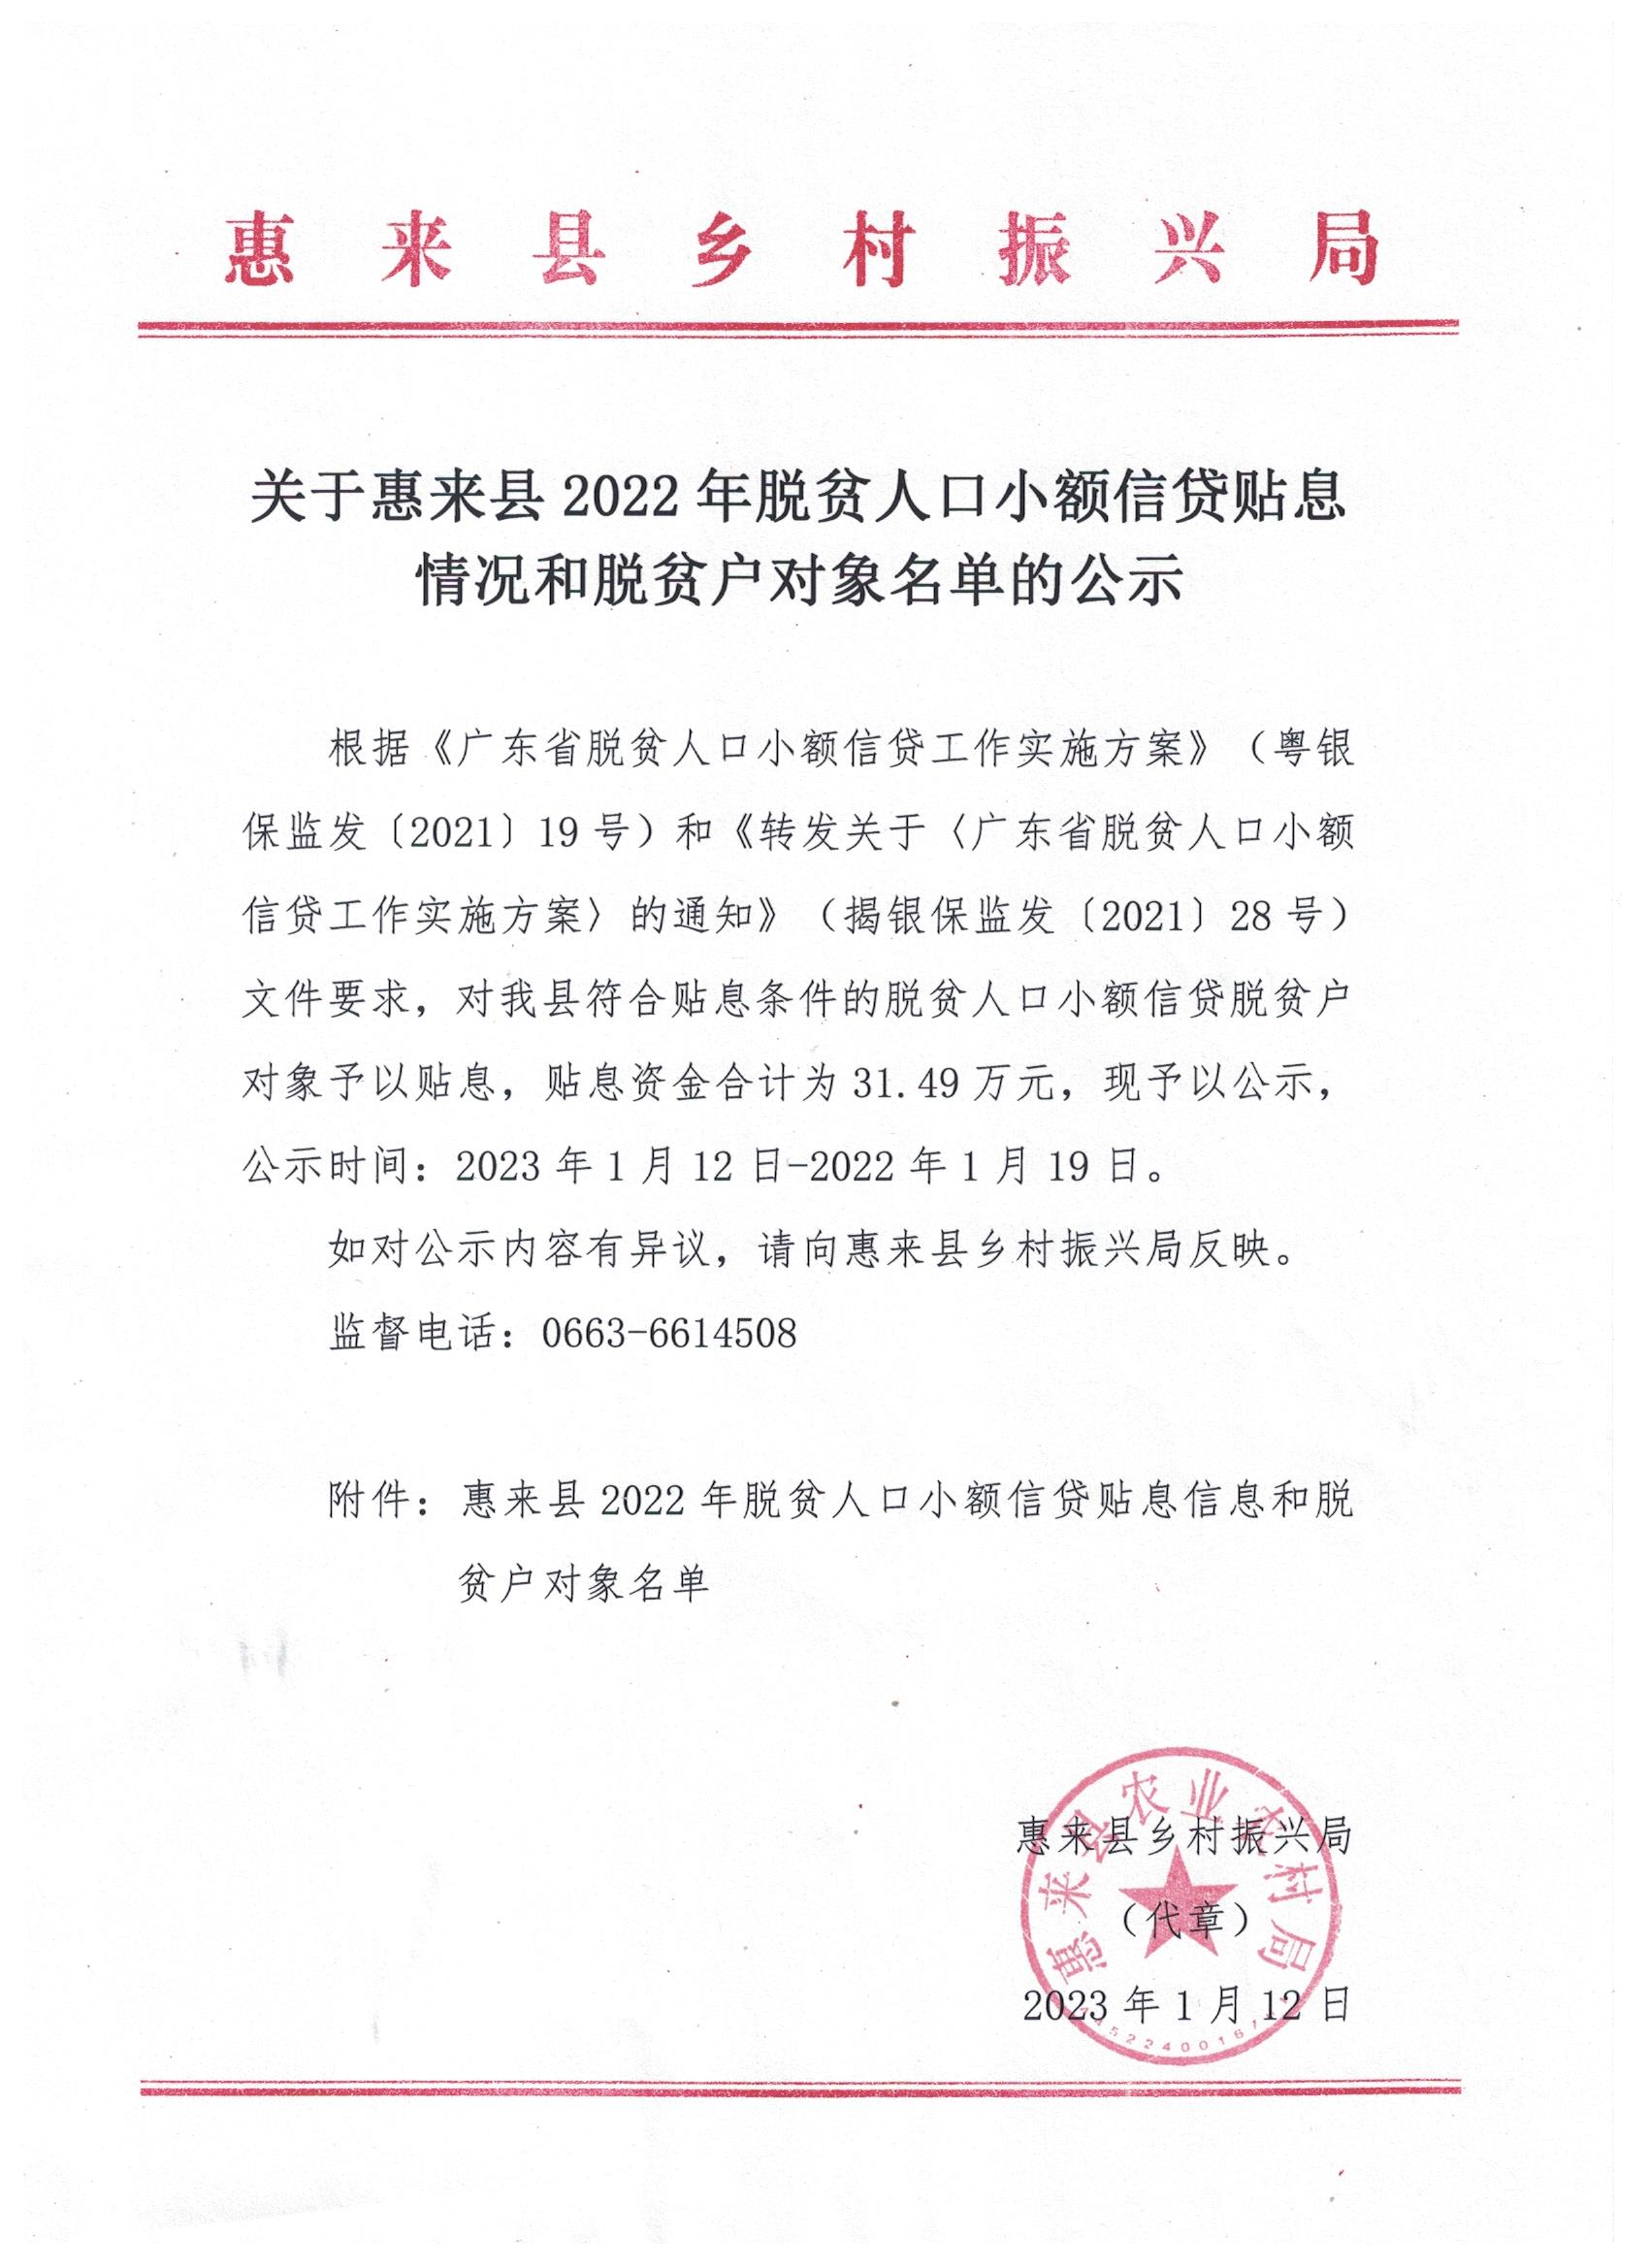 关于惠来县2022年扶贫小额信贷贴息情况和对象名单的公示.jpg